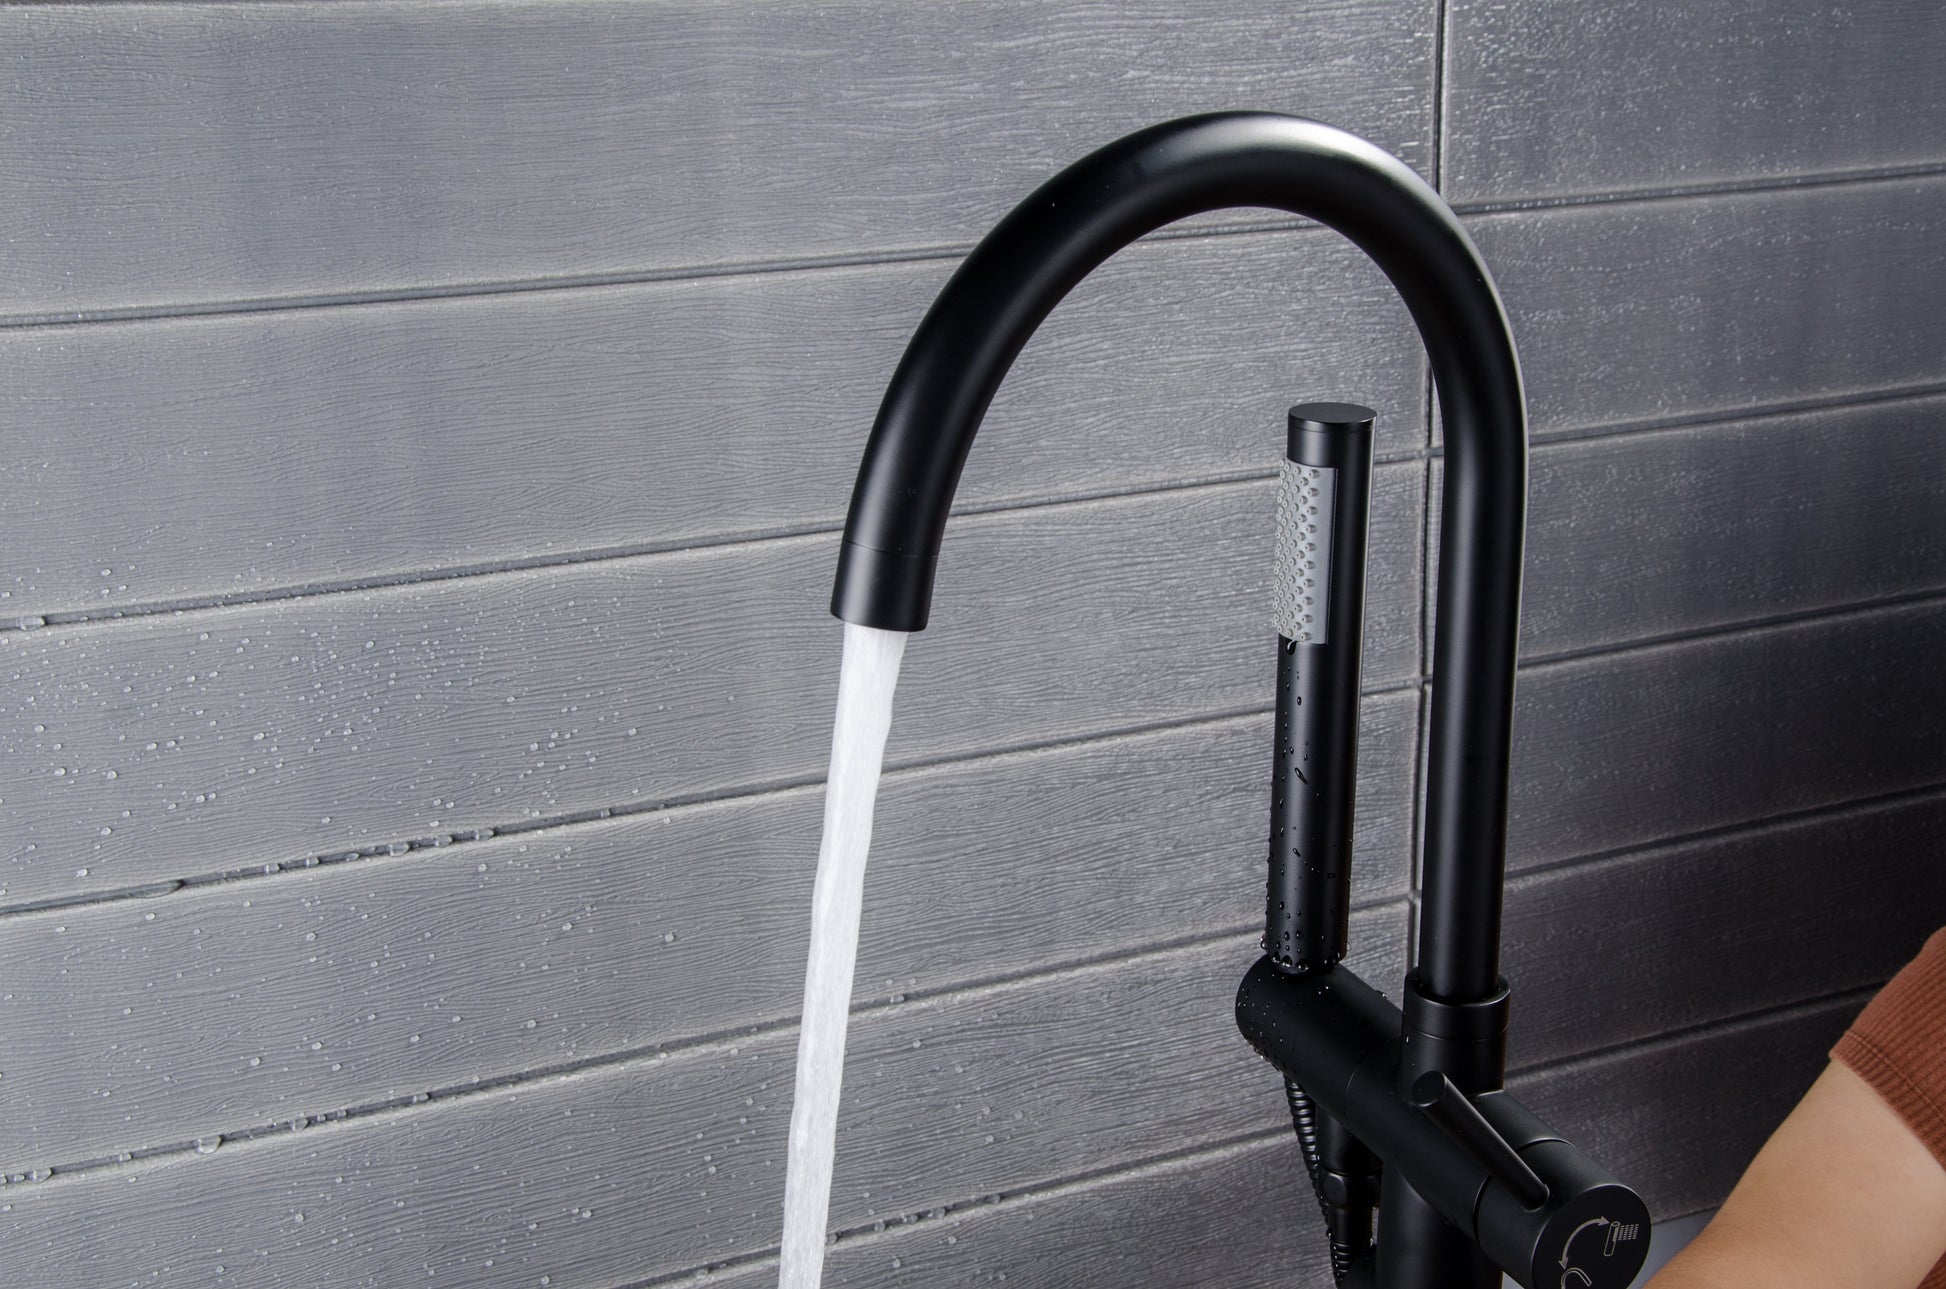 Freestanding Floor Mount 2-Handle Bath Tub Filler Faucet with Handheld Shower in Matte Black - Alipuinc